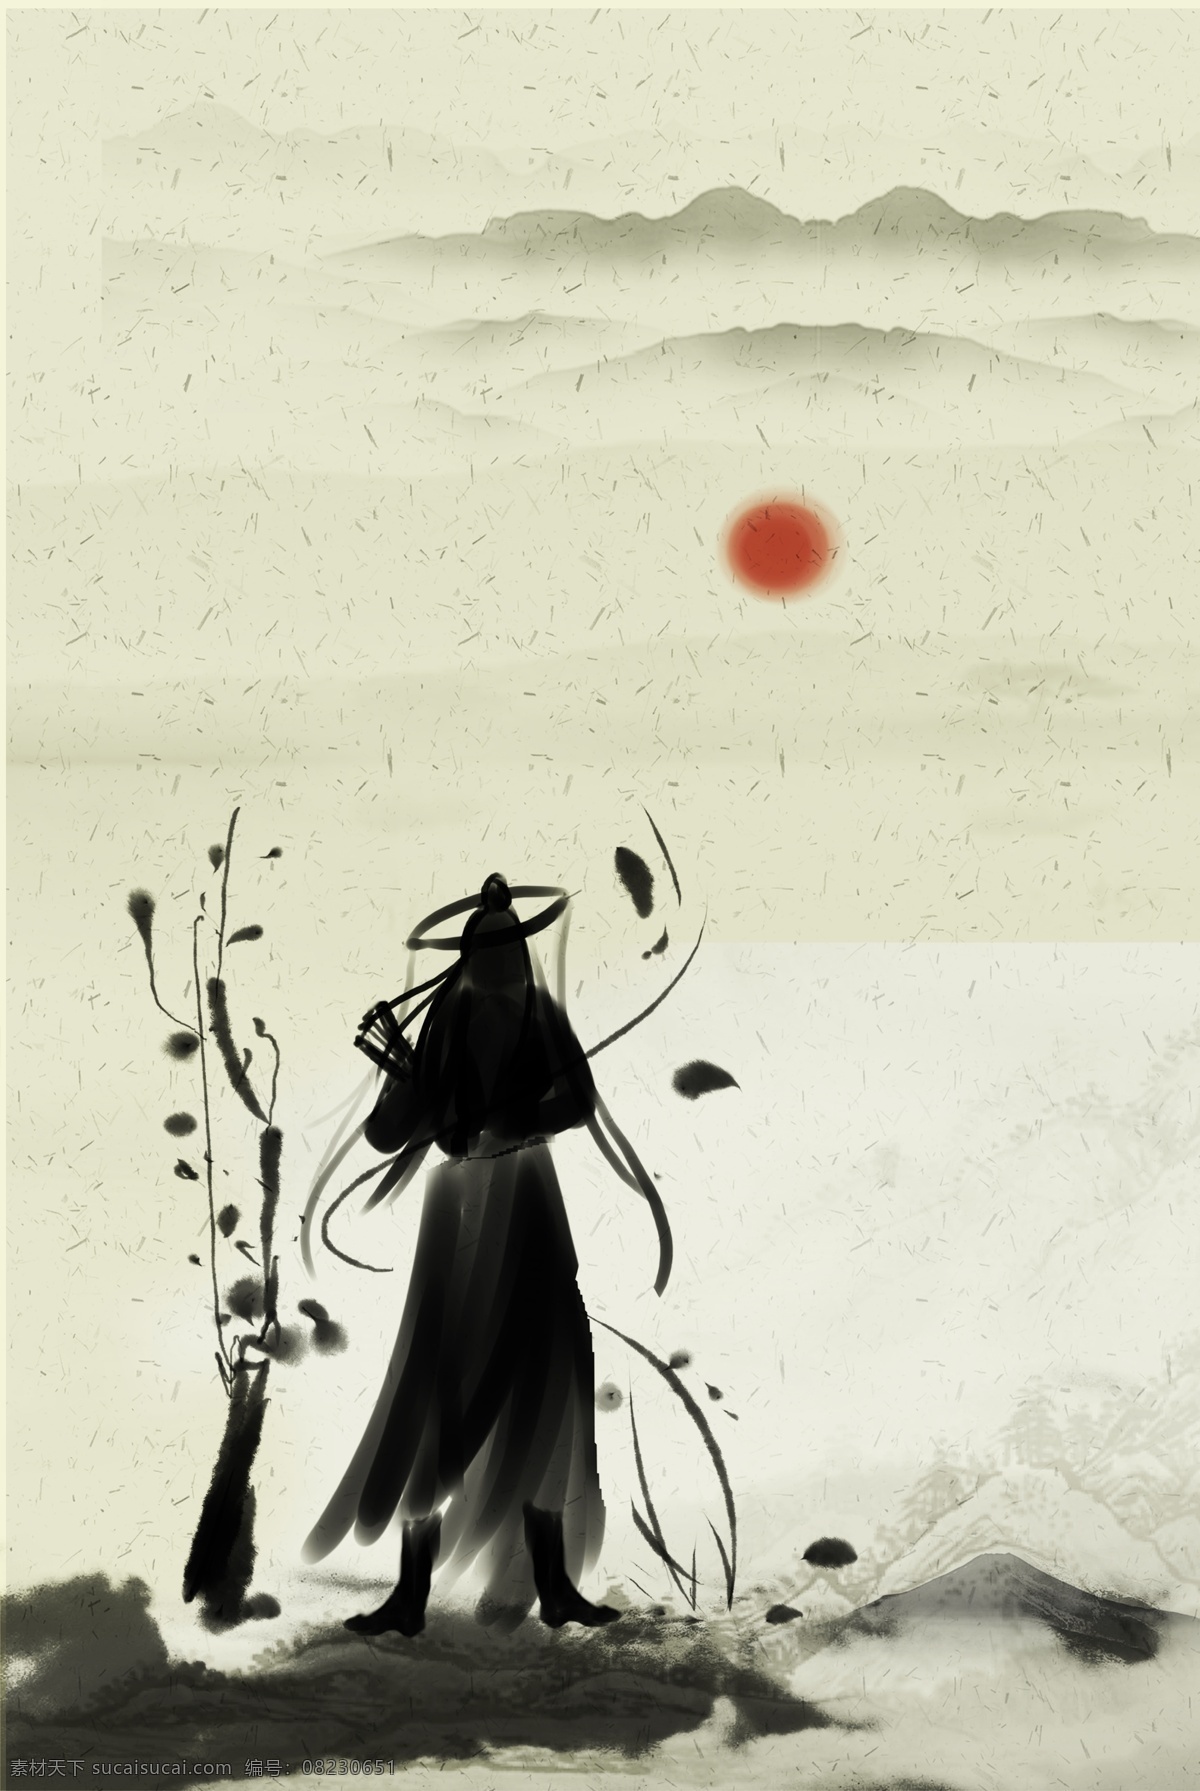 典雅 江湖 水墨 人物 海报 背景 复古 中国风 文艺 清新 质感 纹理 渐变 质朴